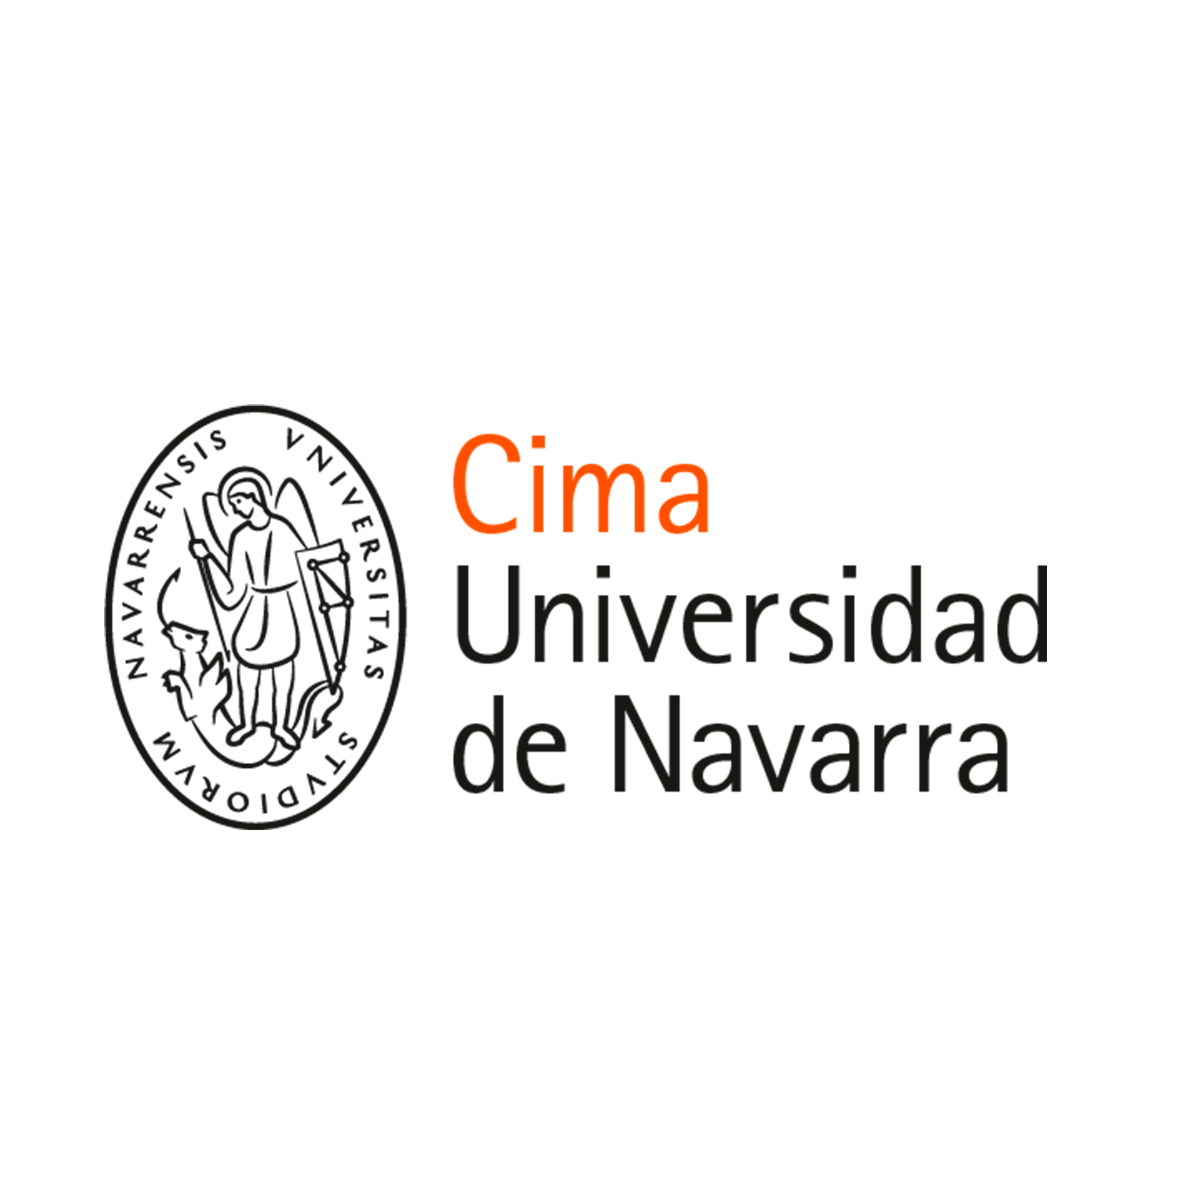 Colaboran: Museo de navarra - Semanas de la Ciencia Navarra